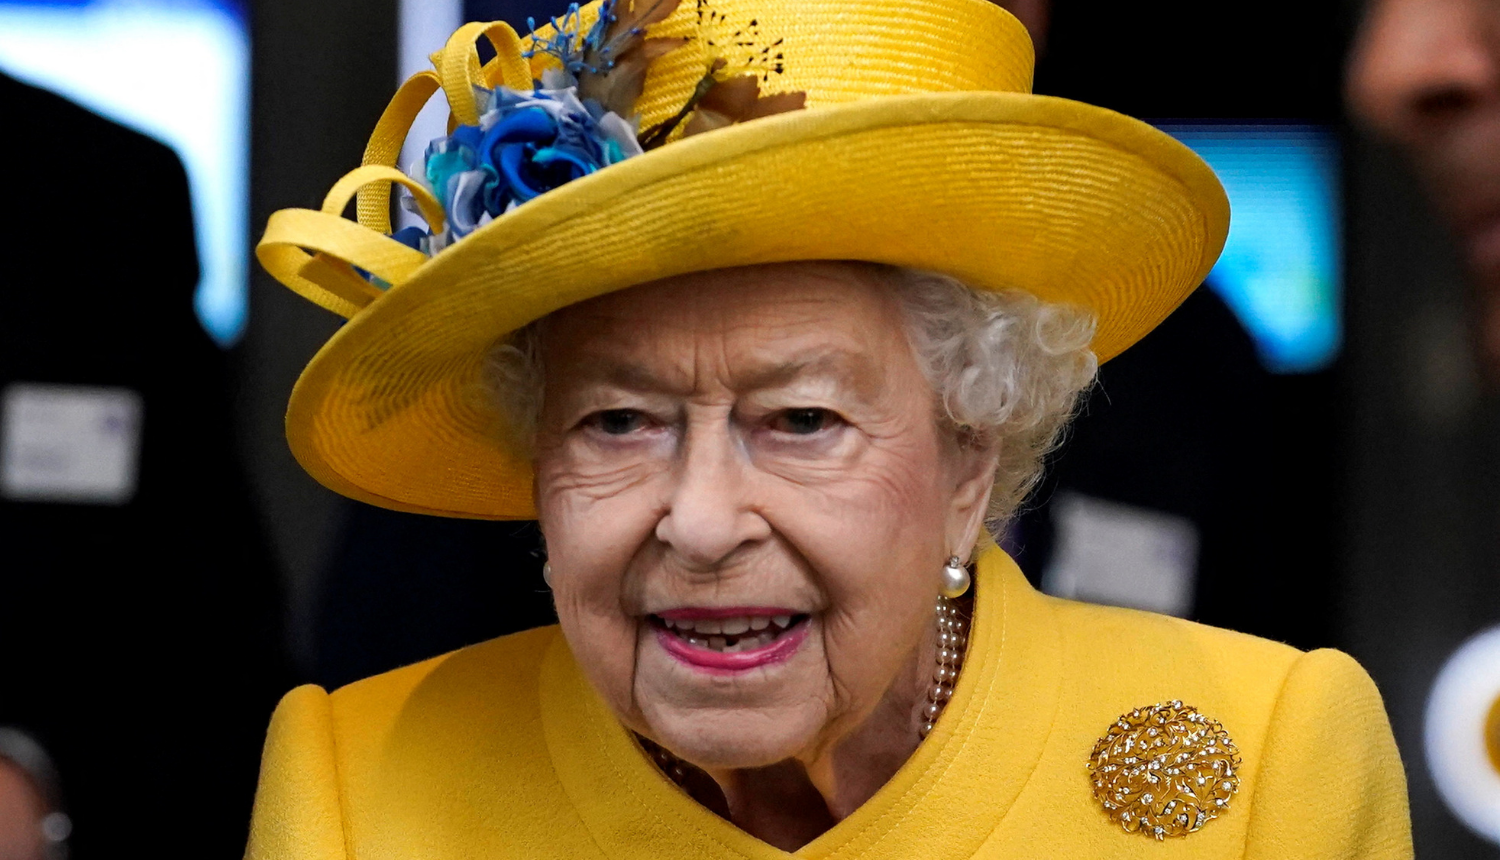 Kraljica Elizabeta tek pokopana, a Britanci već planiraju sprovod Charlesa III.: 'Nažalost tako je'